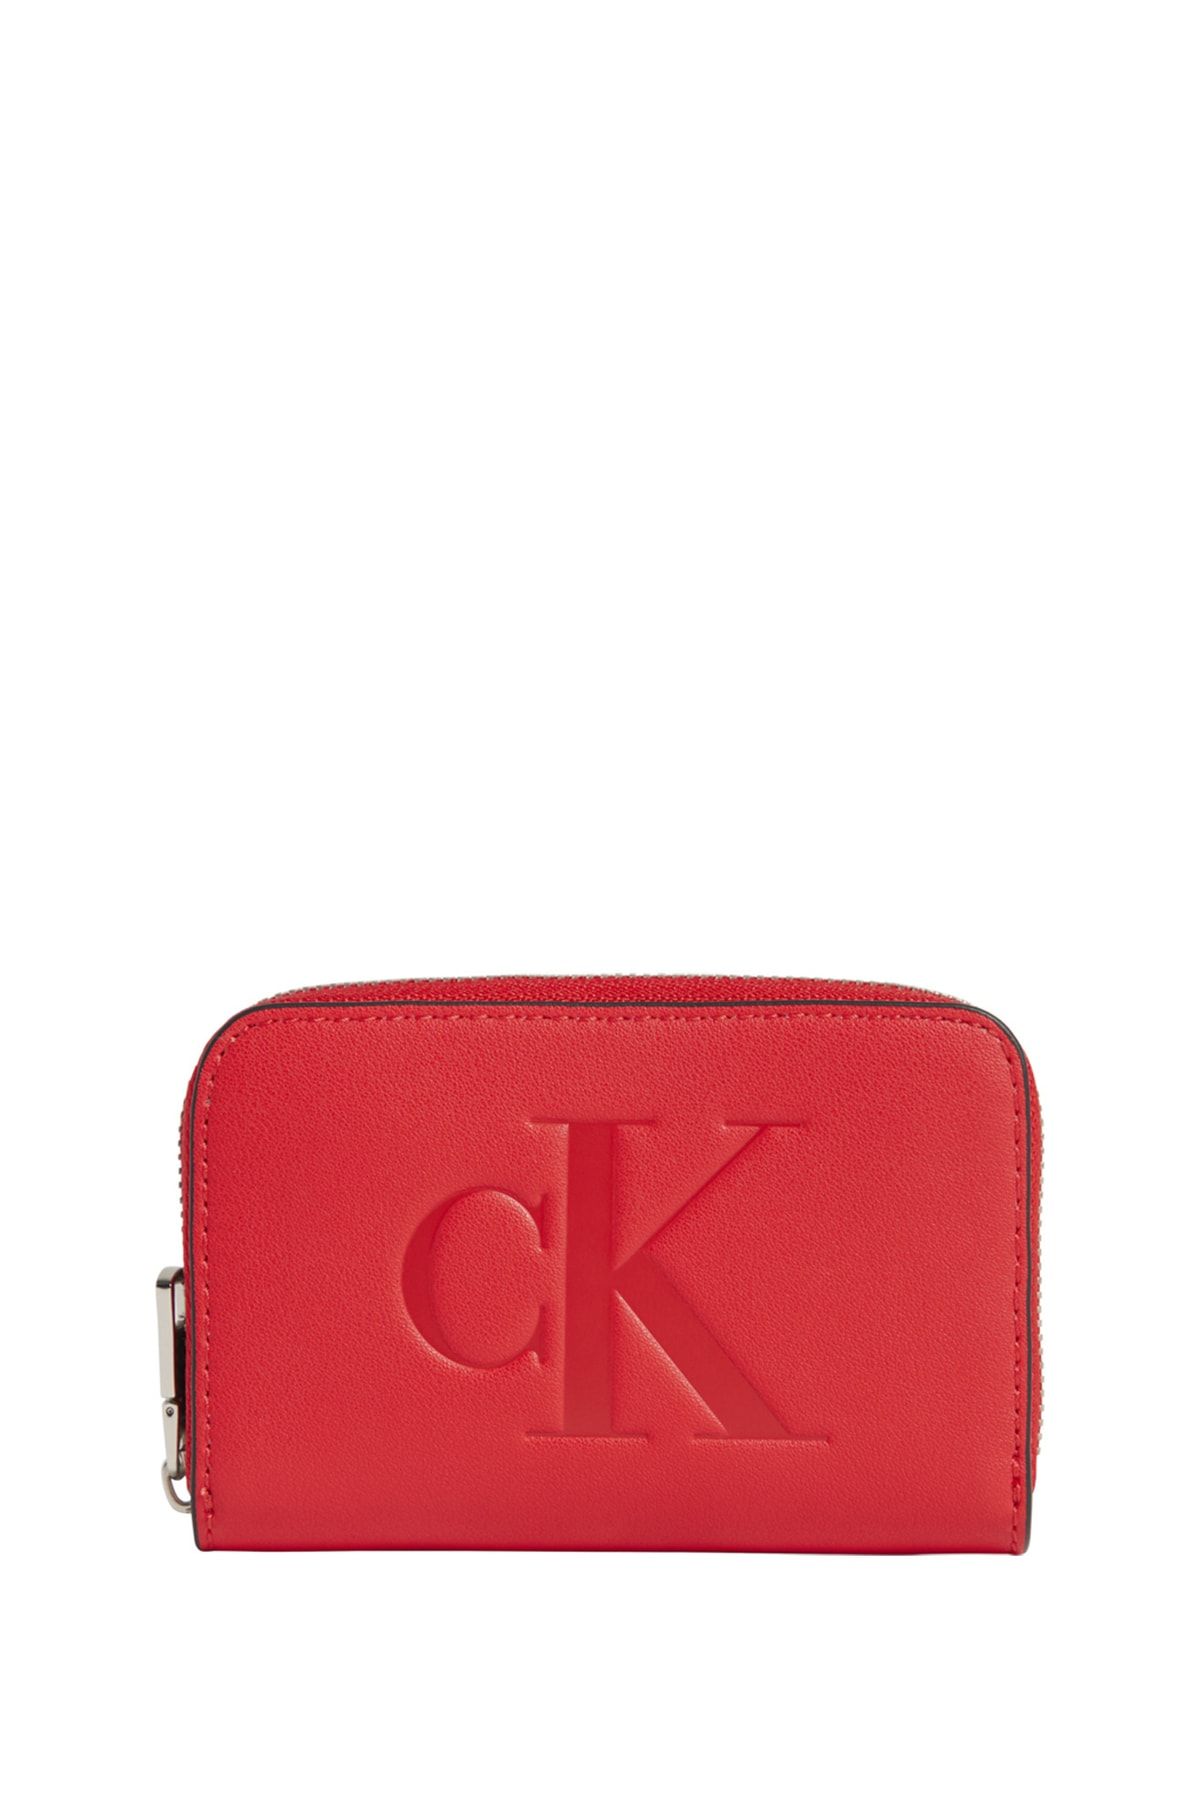 Calvin Klein Wallet - Red - With Slogan - Trendyol